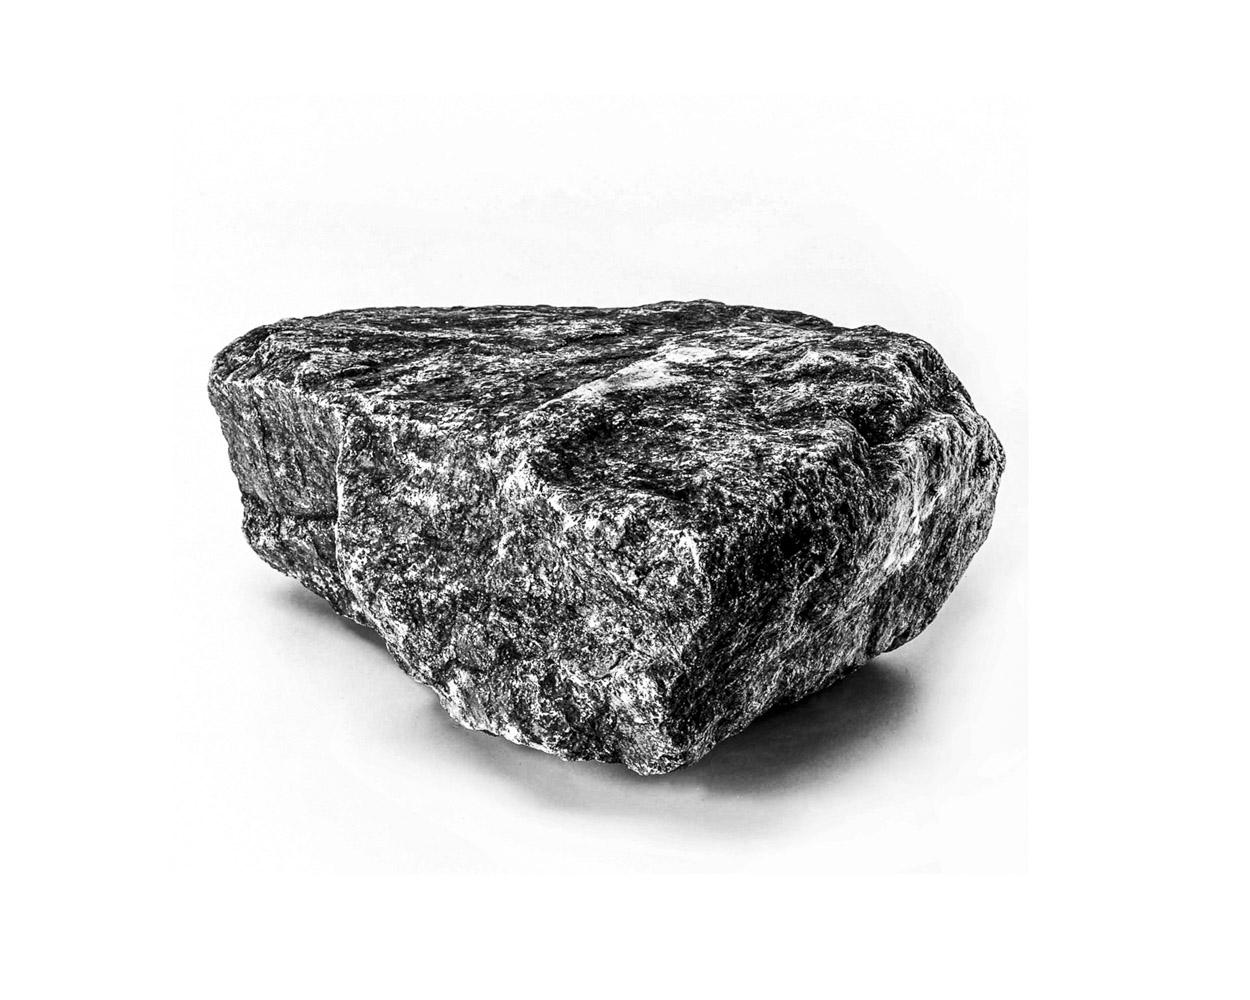 La primera piedra - 